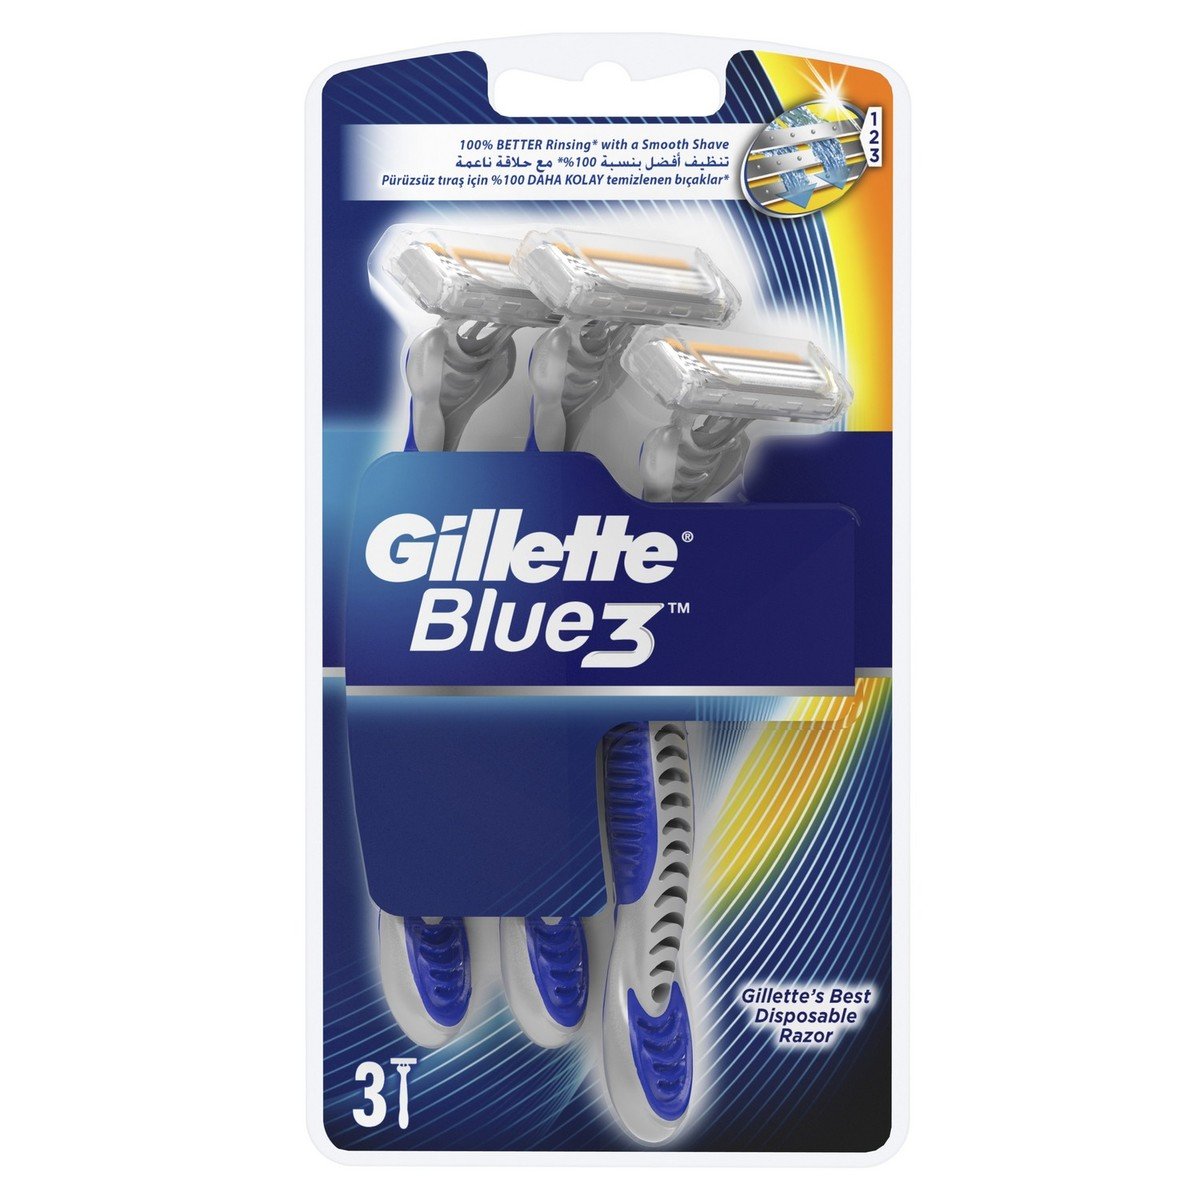 Gillette Blue3 Men’s Disposable Razors 3 pcs